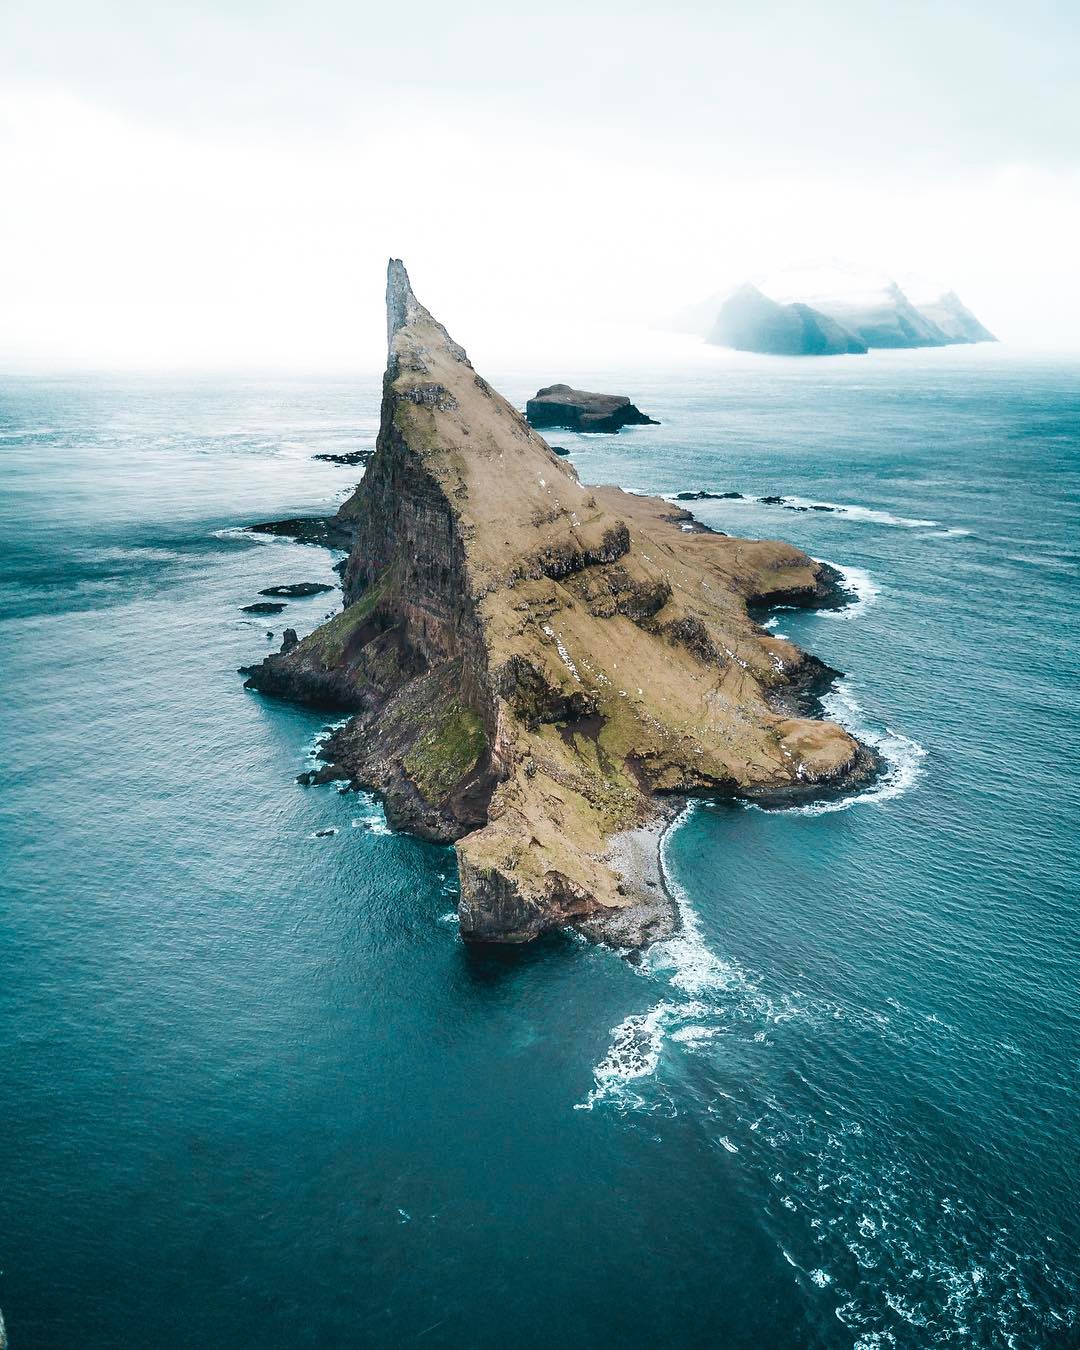 1080x1350, 301 Kb / остров, море, гора, скала, фарерские острова